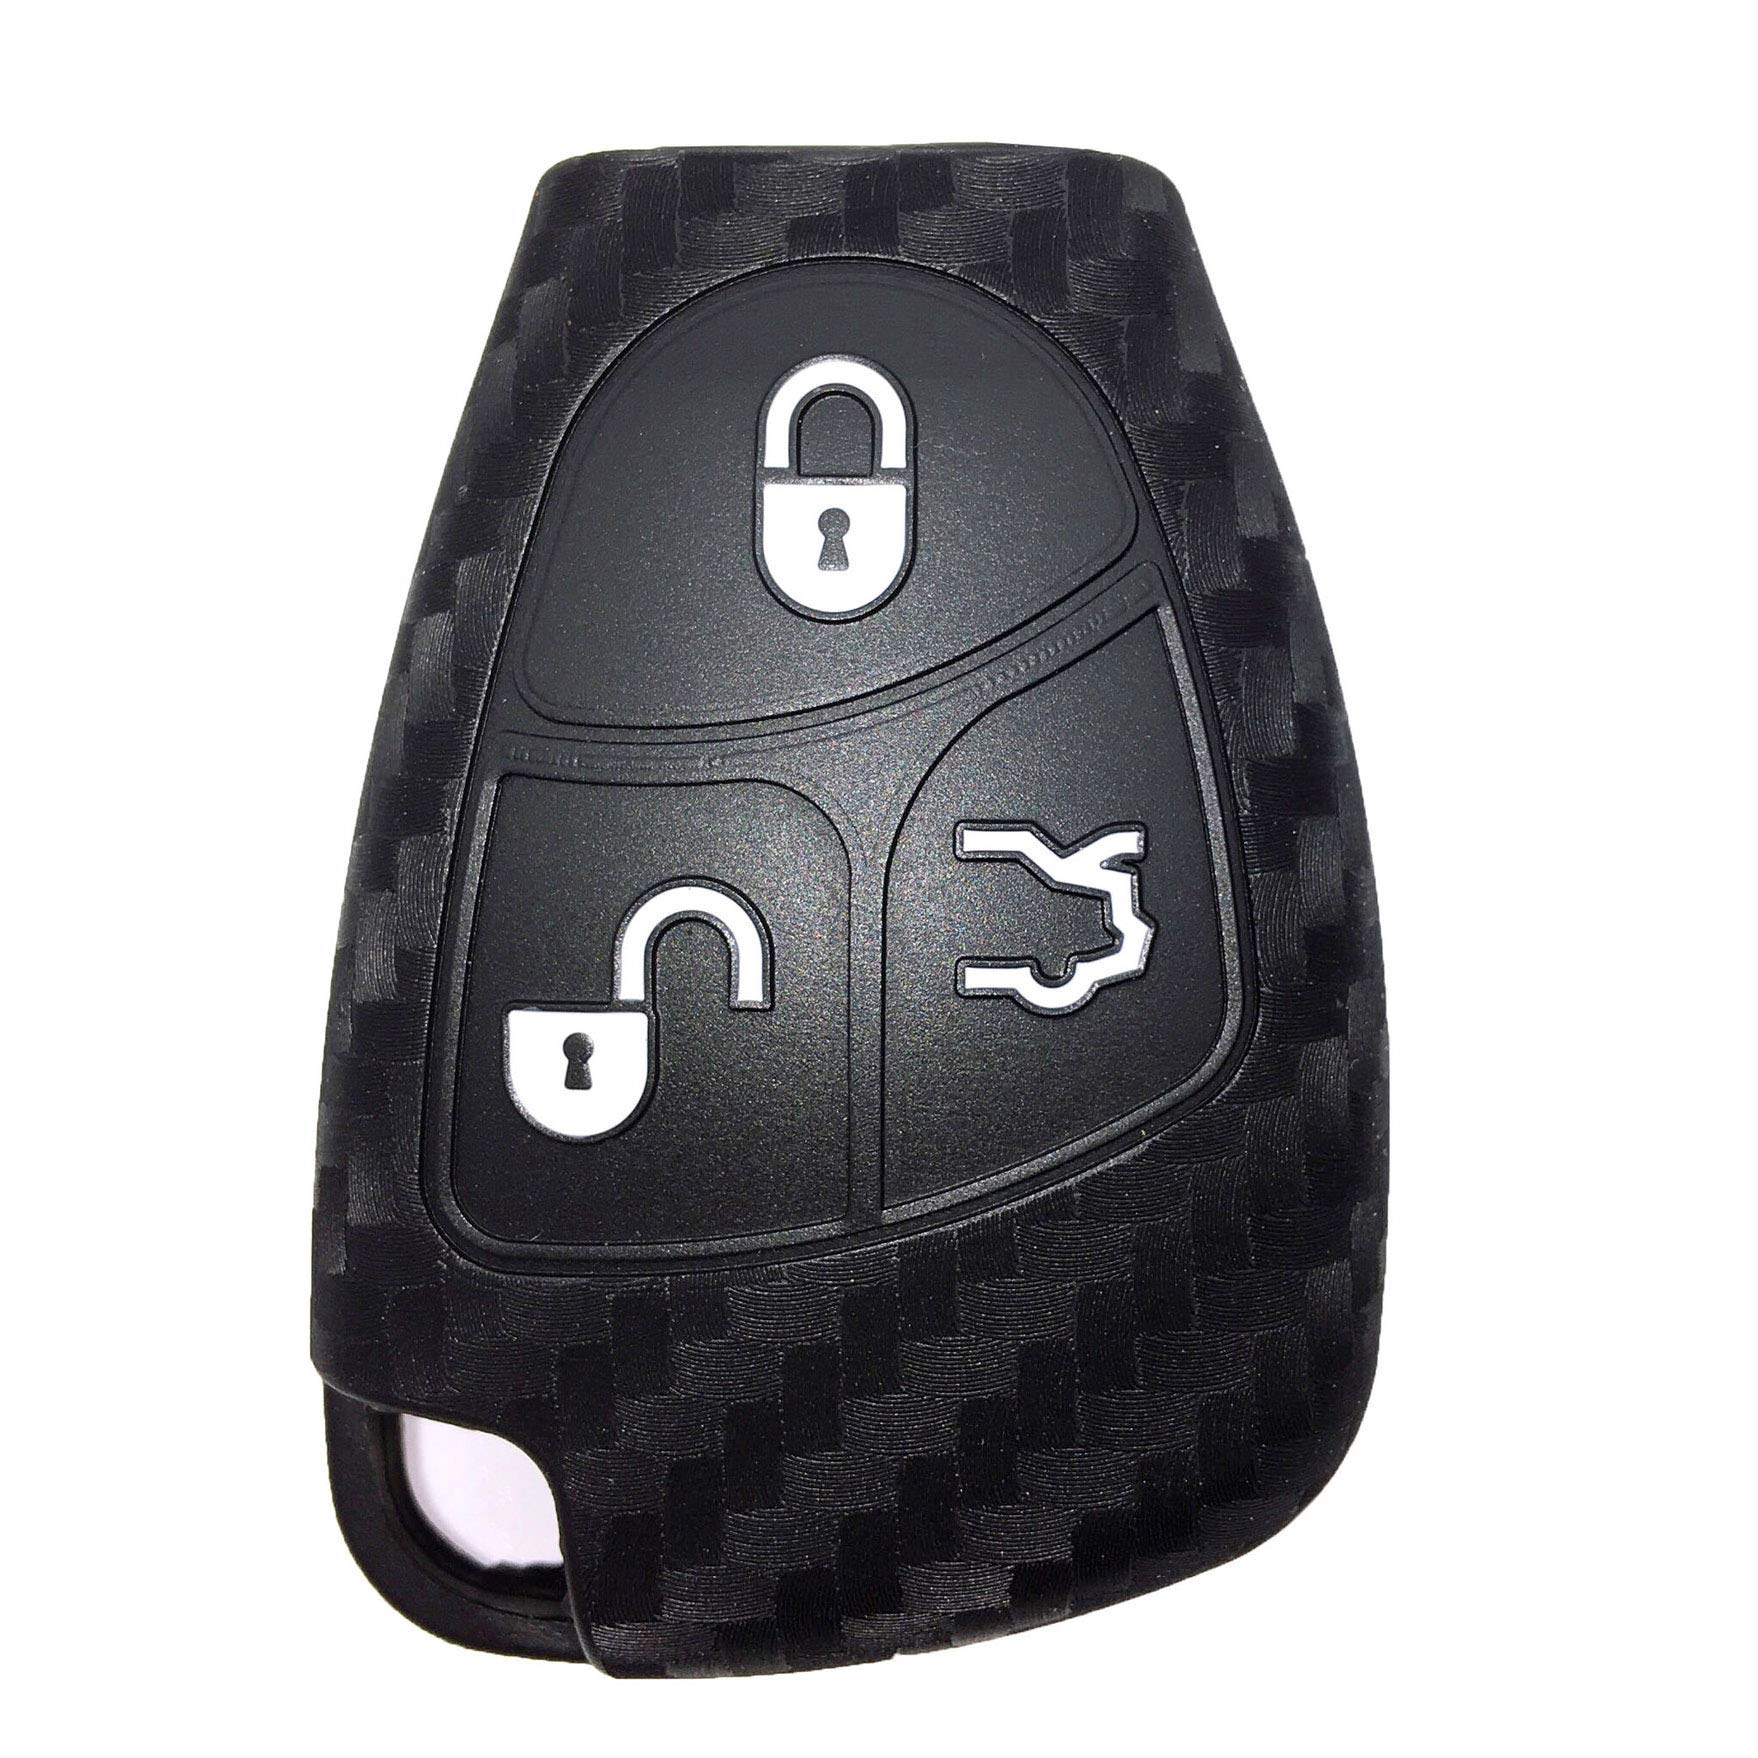 Schlüsselhülle kompatibel mit Mercedes Benz, Kohlefaser-Silikon-Autoschlüssel-Schutzhülle, kompatibel mit Mercedes Benz W203 W204 W211 B C E ML S CLK CL Fernbedienungshülle mit 3 Tasten geschützt von Berfea